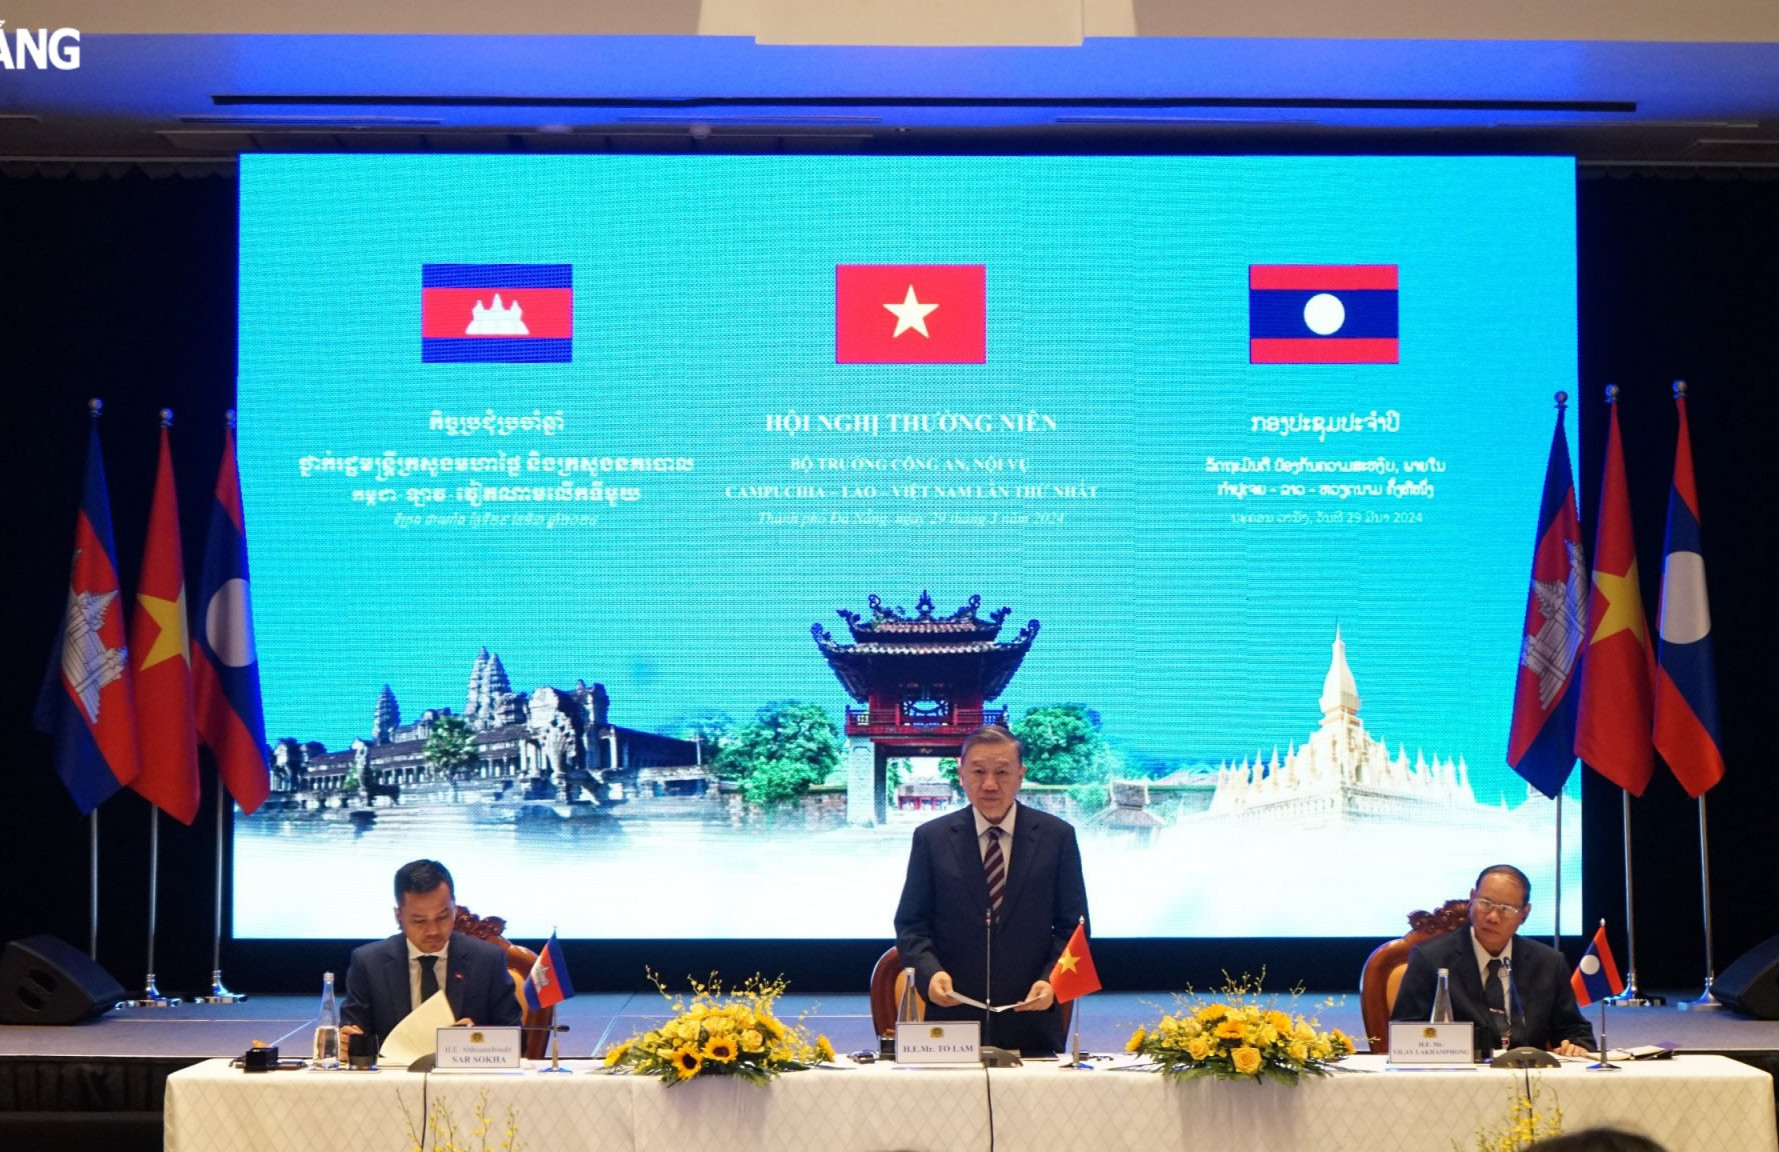 Hội nghị thường niên Bộ trưởng Công an, Nội vụ Campuchia - Lào - Việt Nam lần thứ nhất